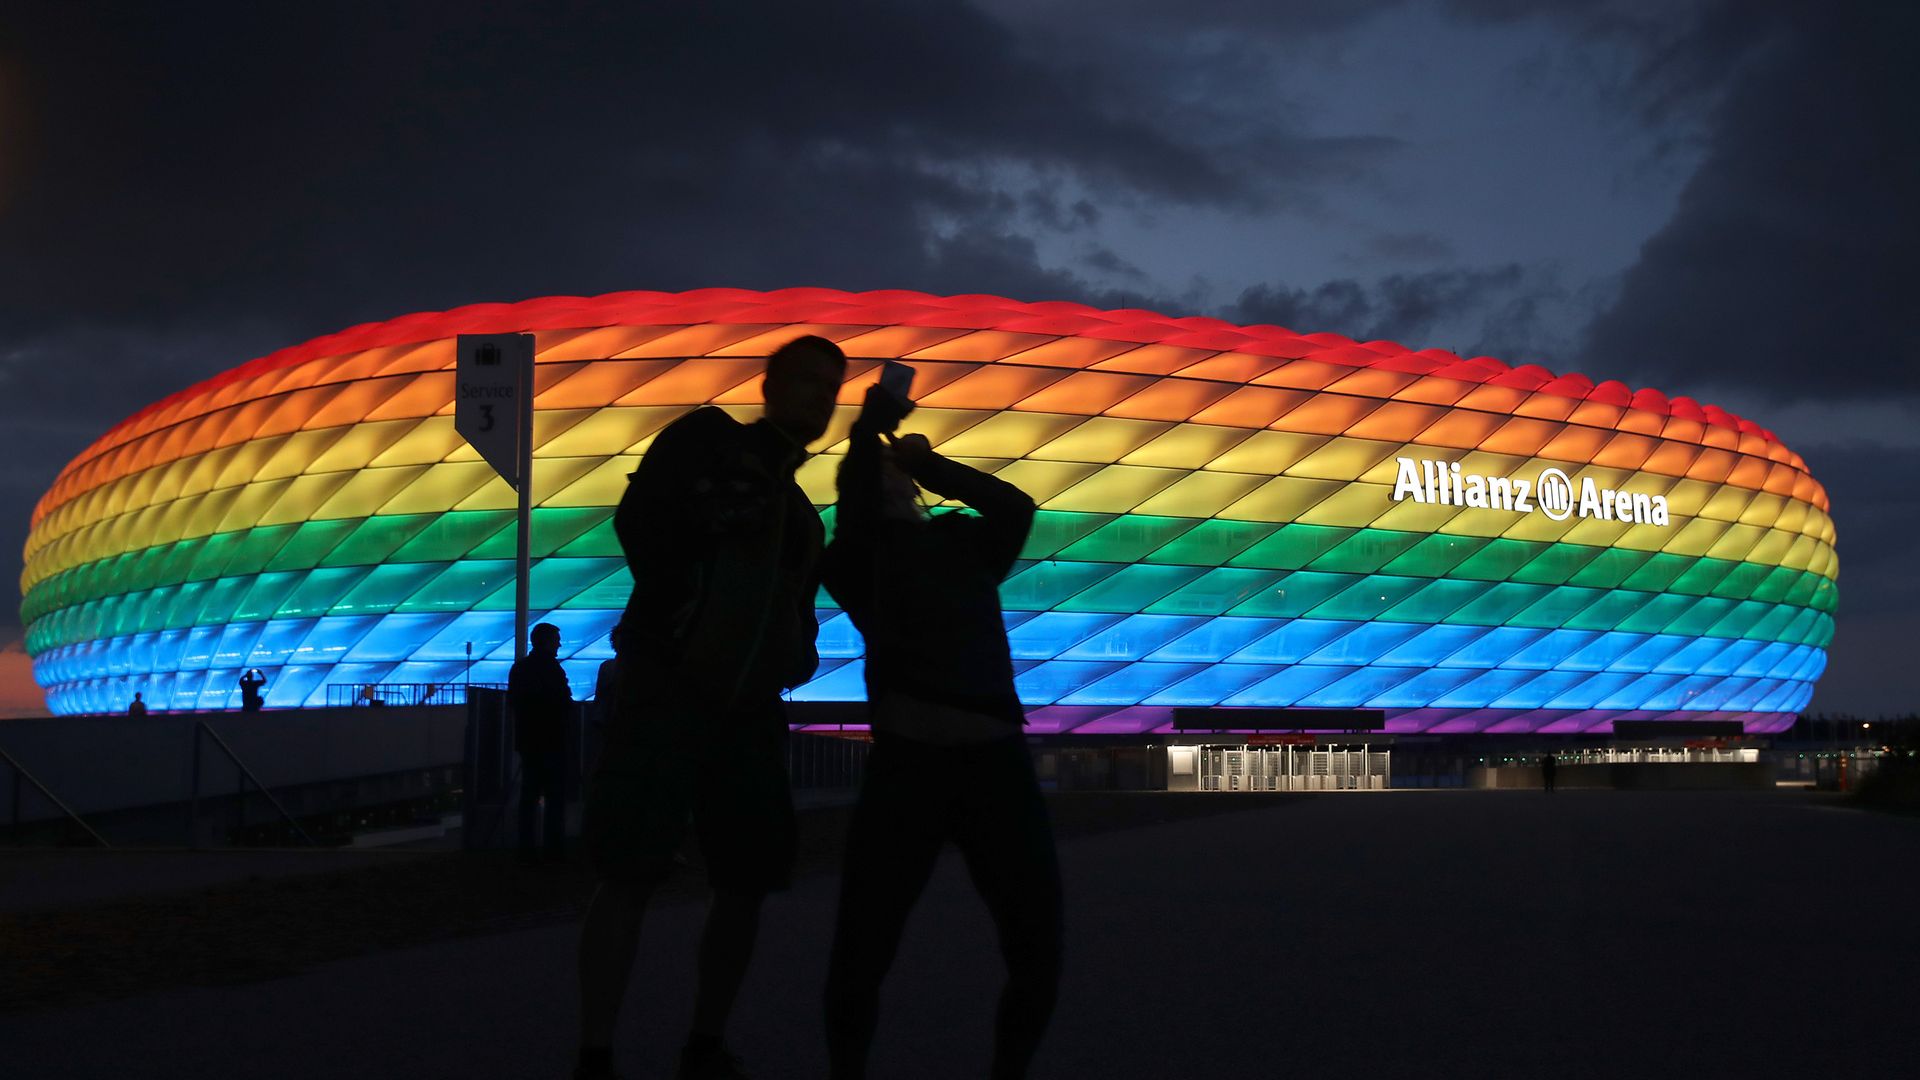 УЕФА забрани на "Алианц Арена" да грее в цветовете на дъгата